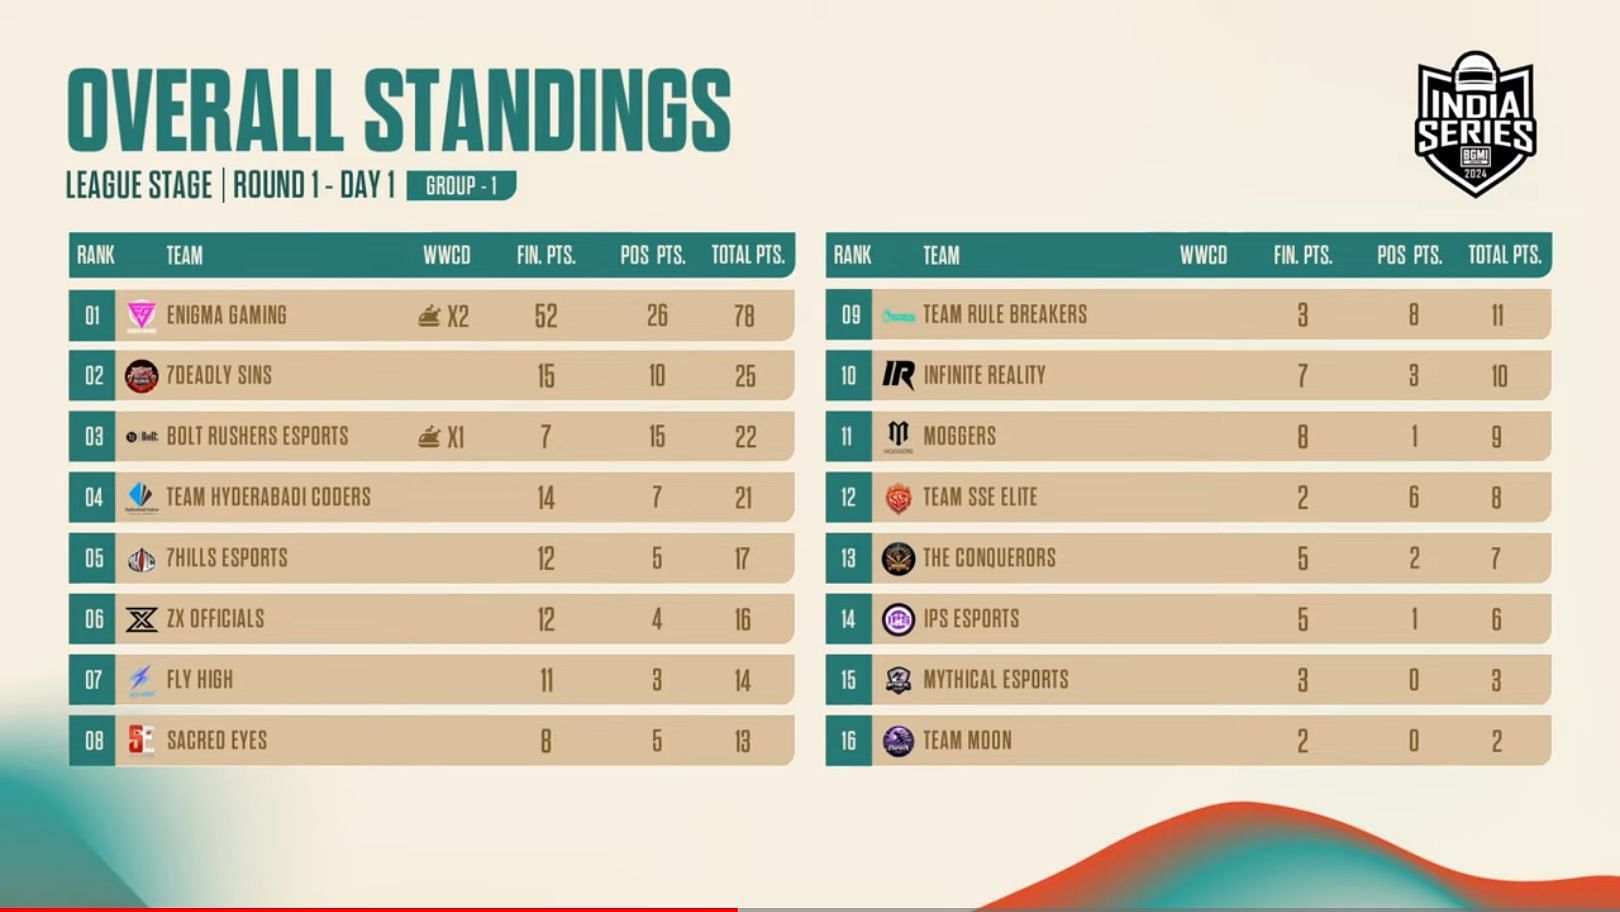 Group 1 overall standings (Image via BGMI)